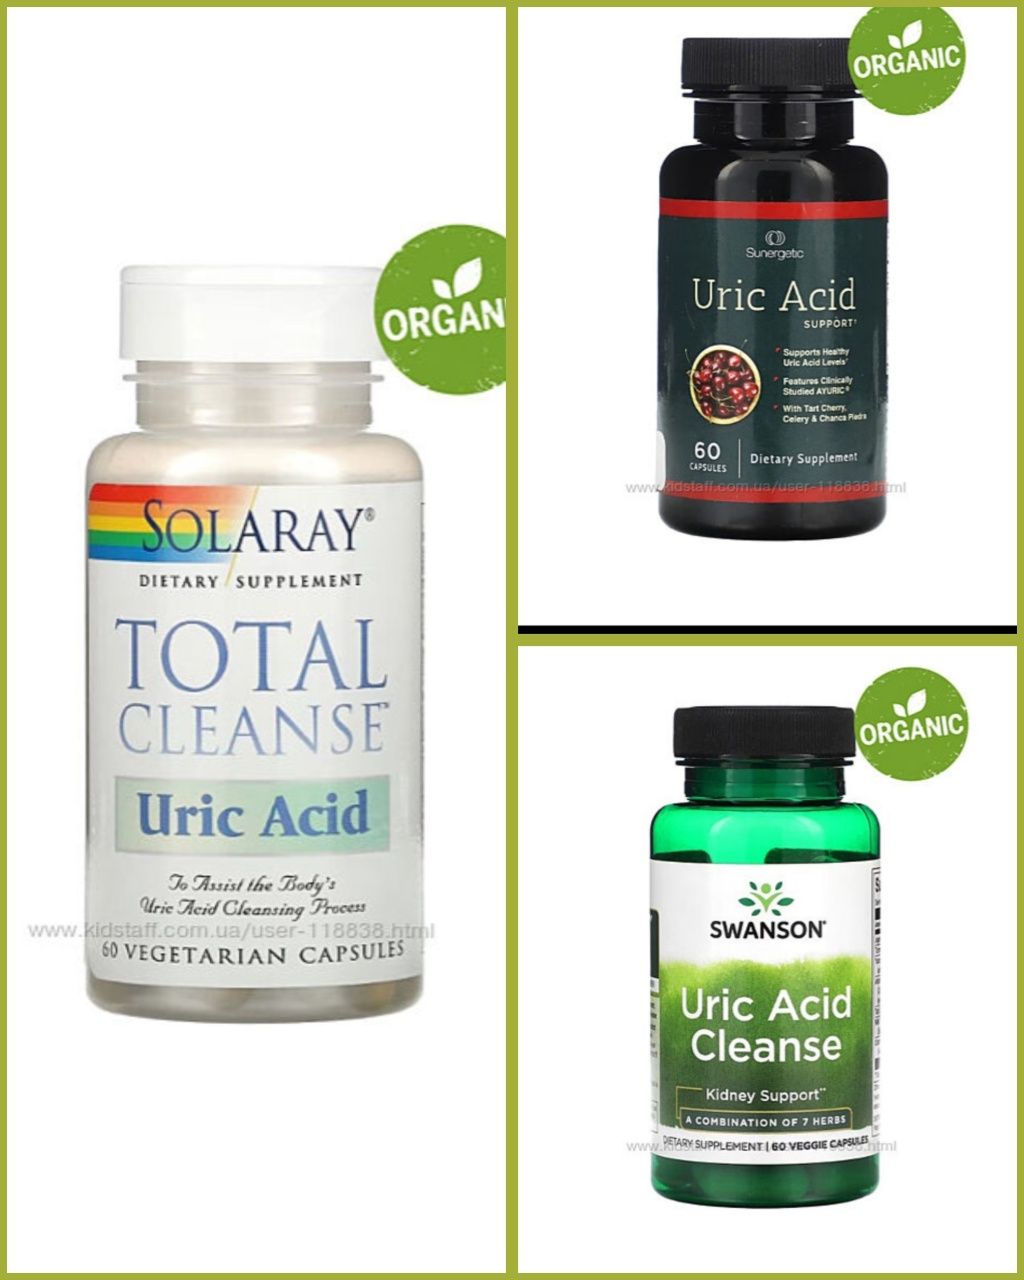 Total Cleanse Uric Acid, очищение от мочевой кислоты